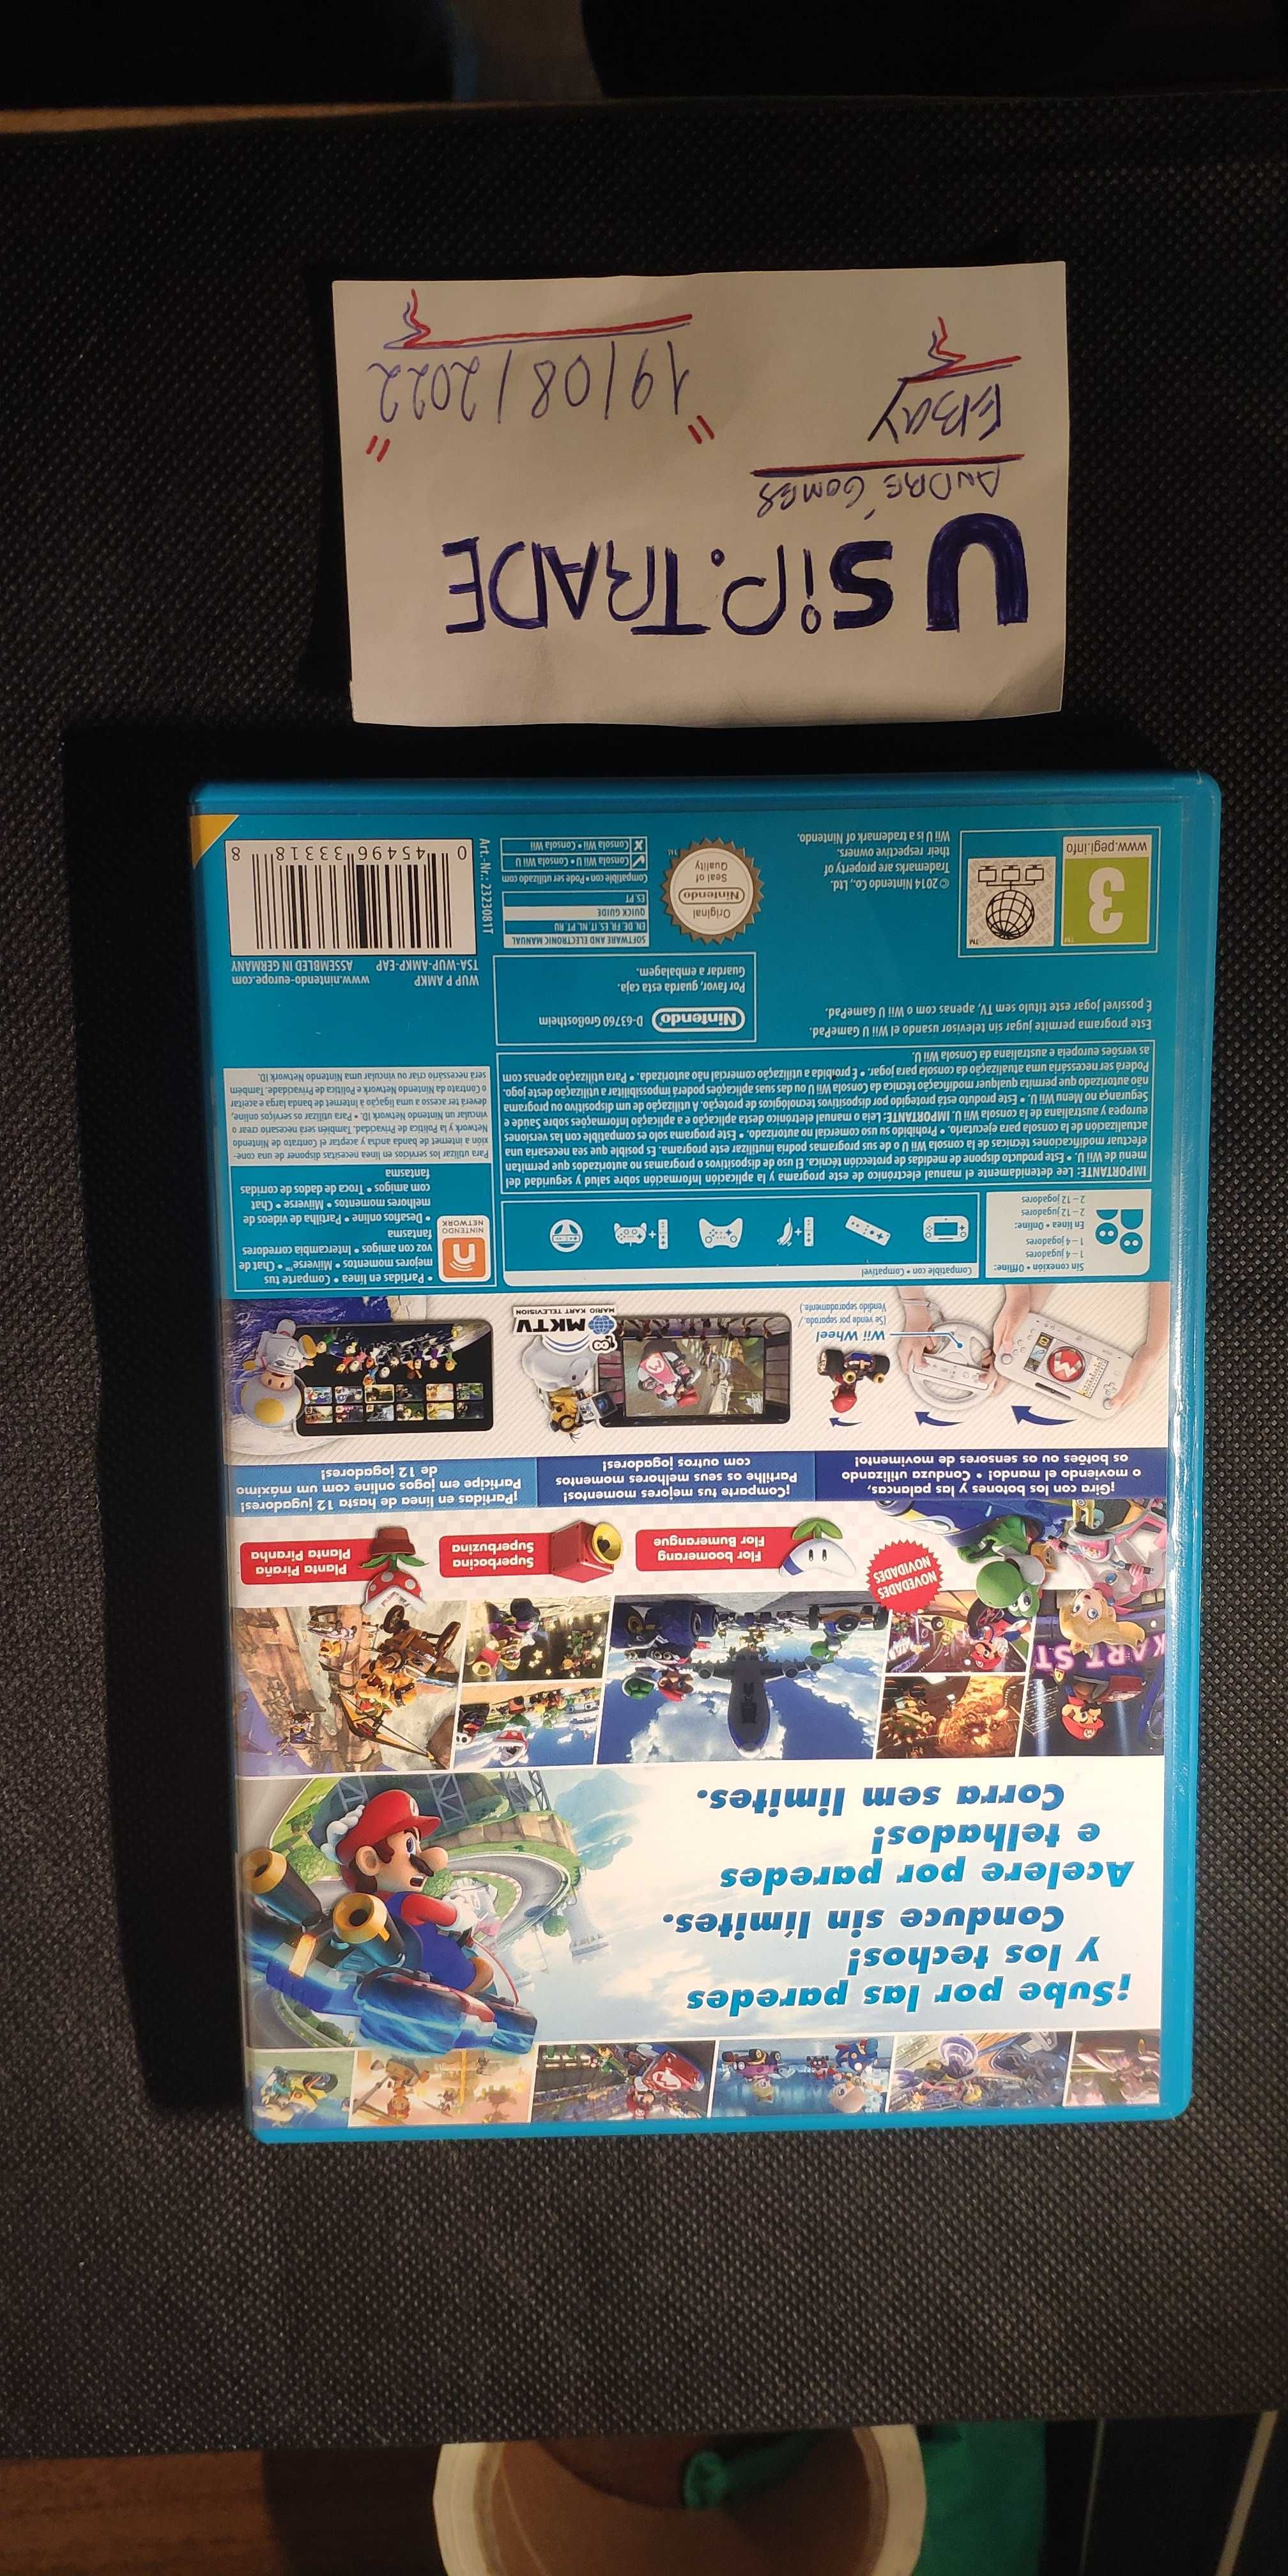 Mario Kart 8 (Wii U, 2014) - Apenas a caixa.